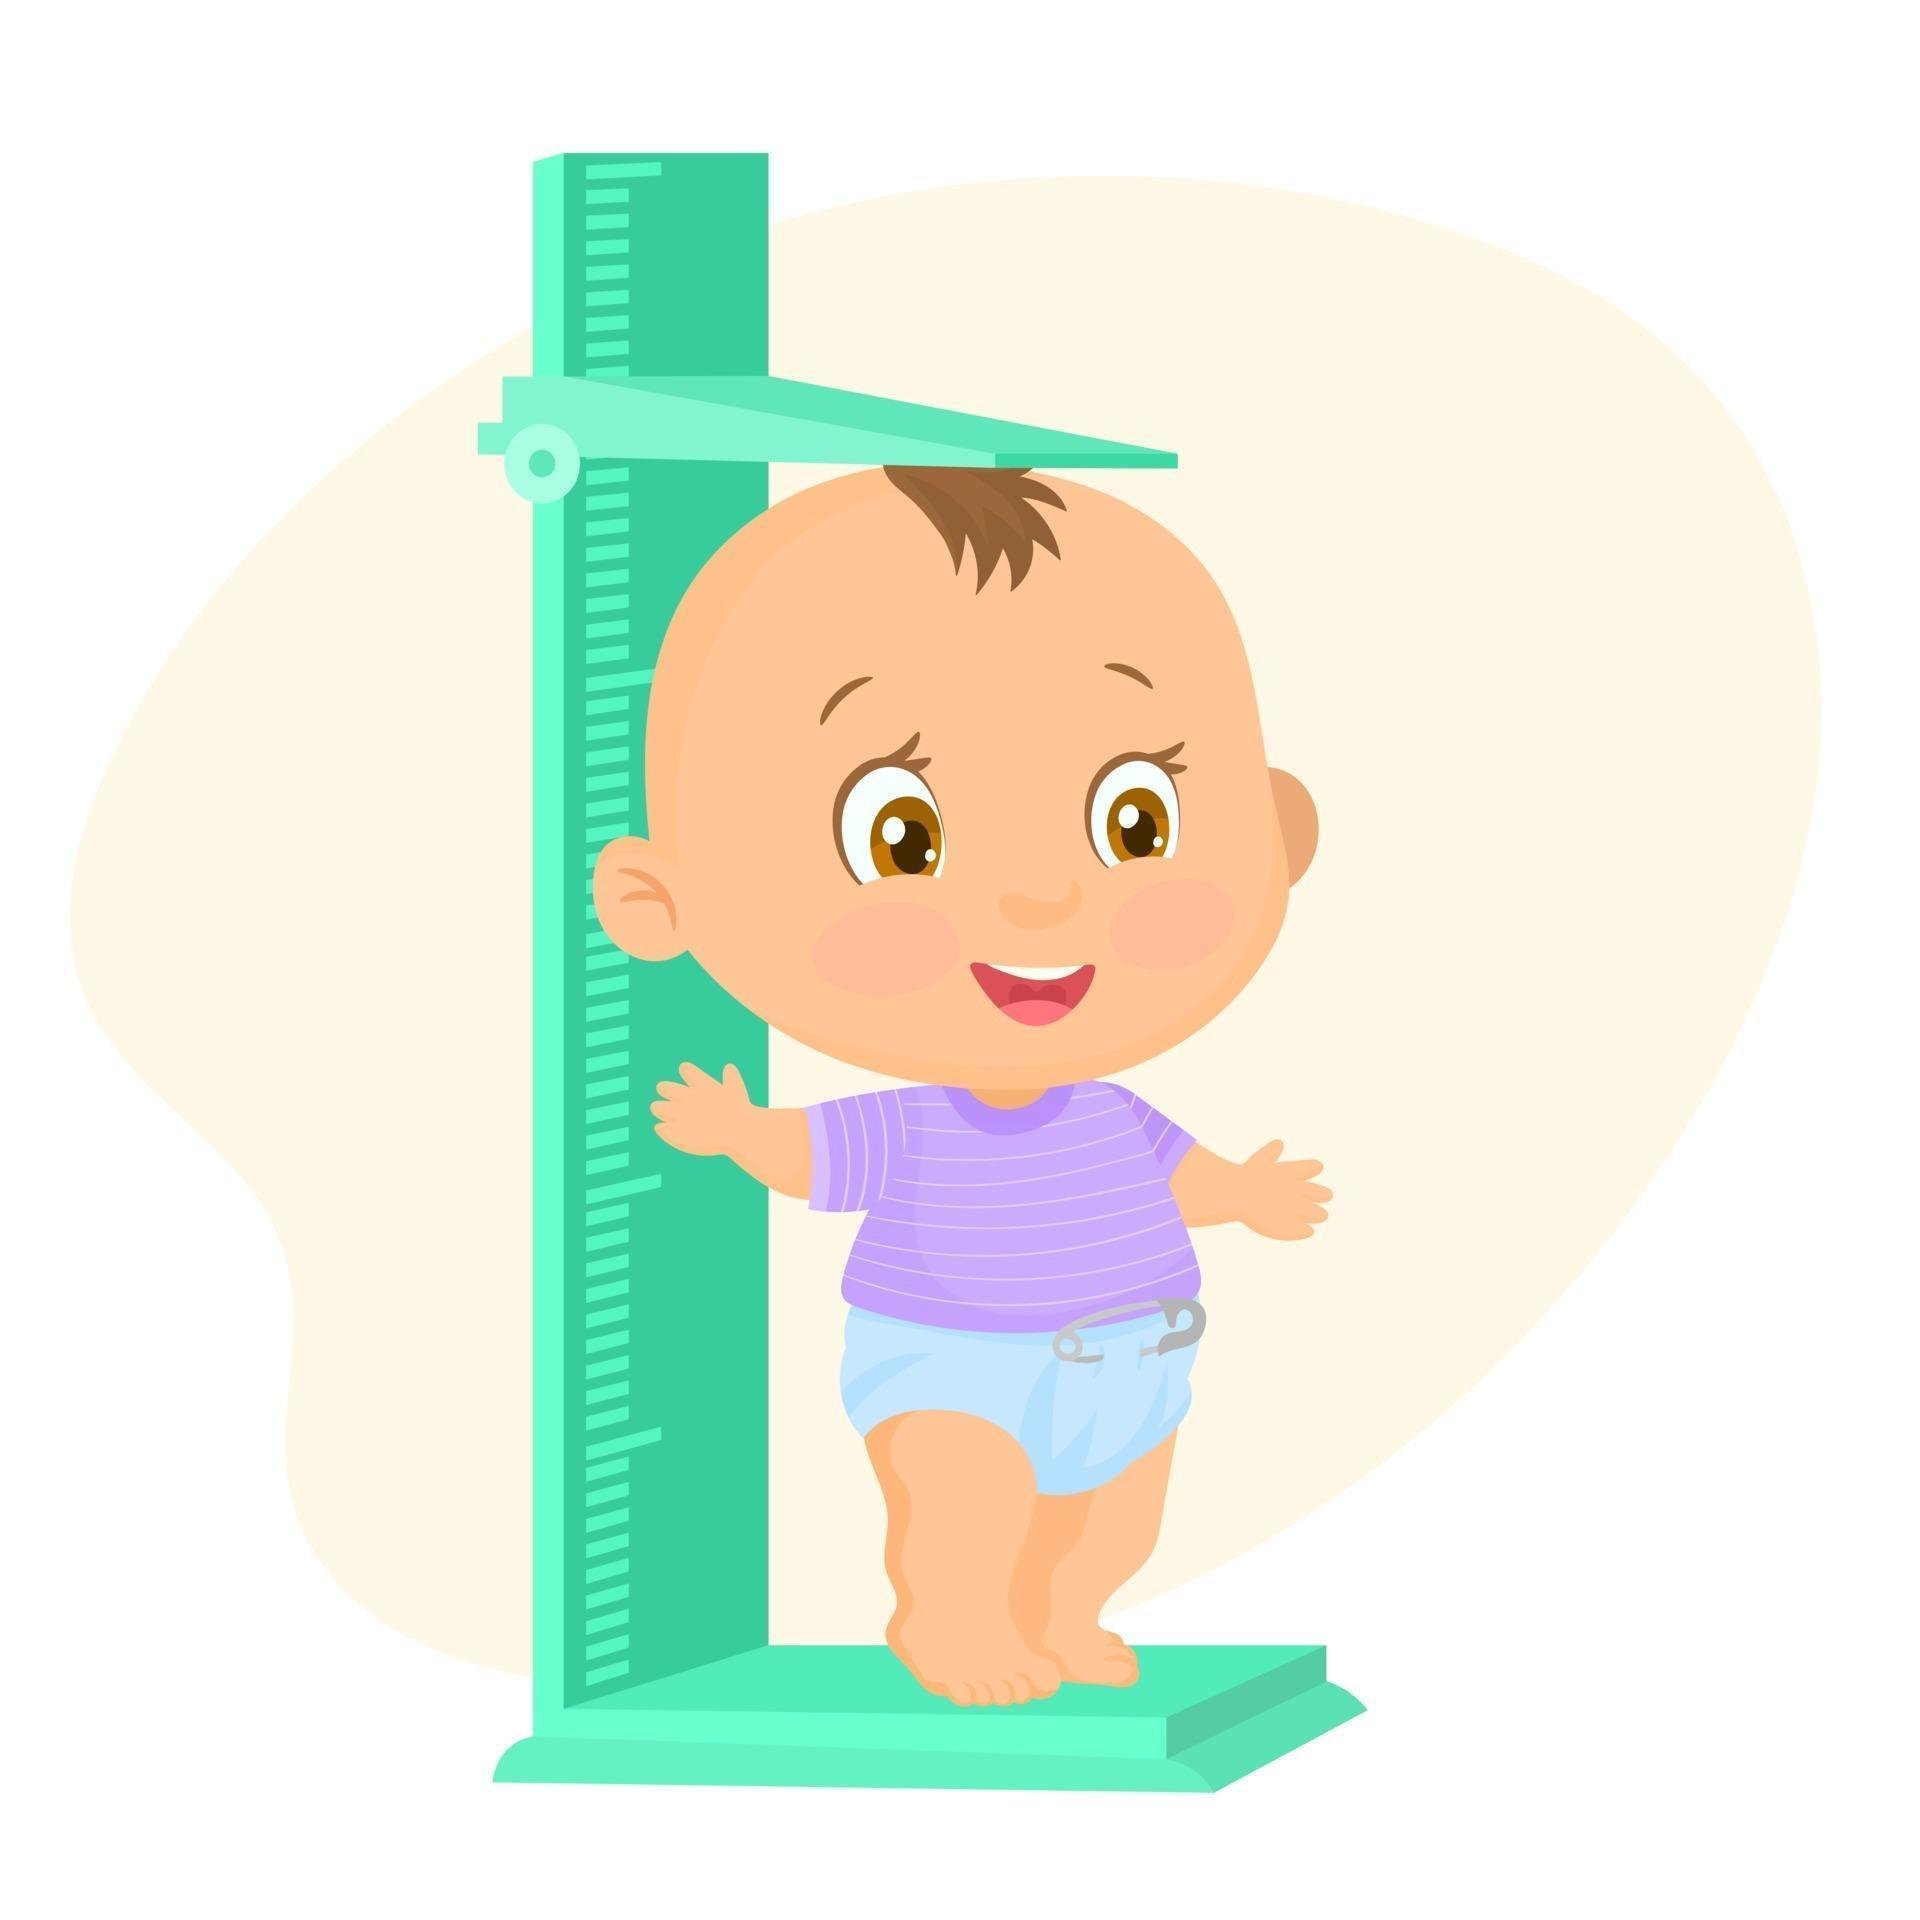 Измерение роста ребенка. Измеритель роста для детей. Антропометрия детей. Антропометрия детей в саду.